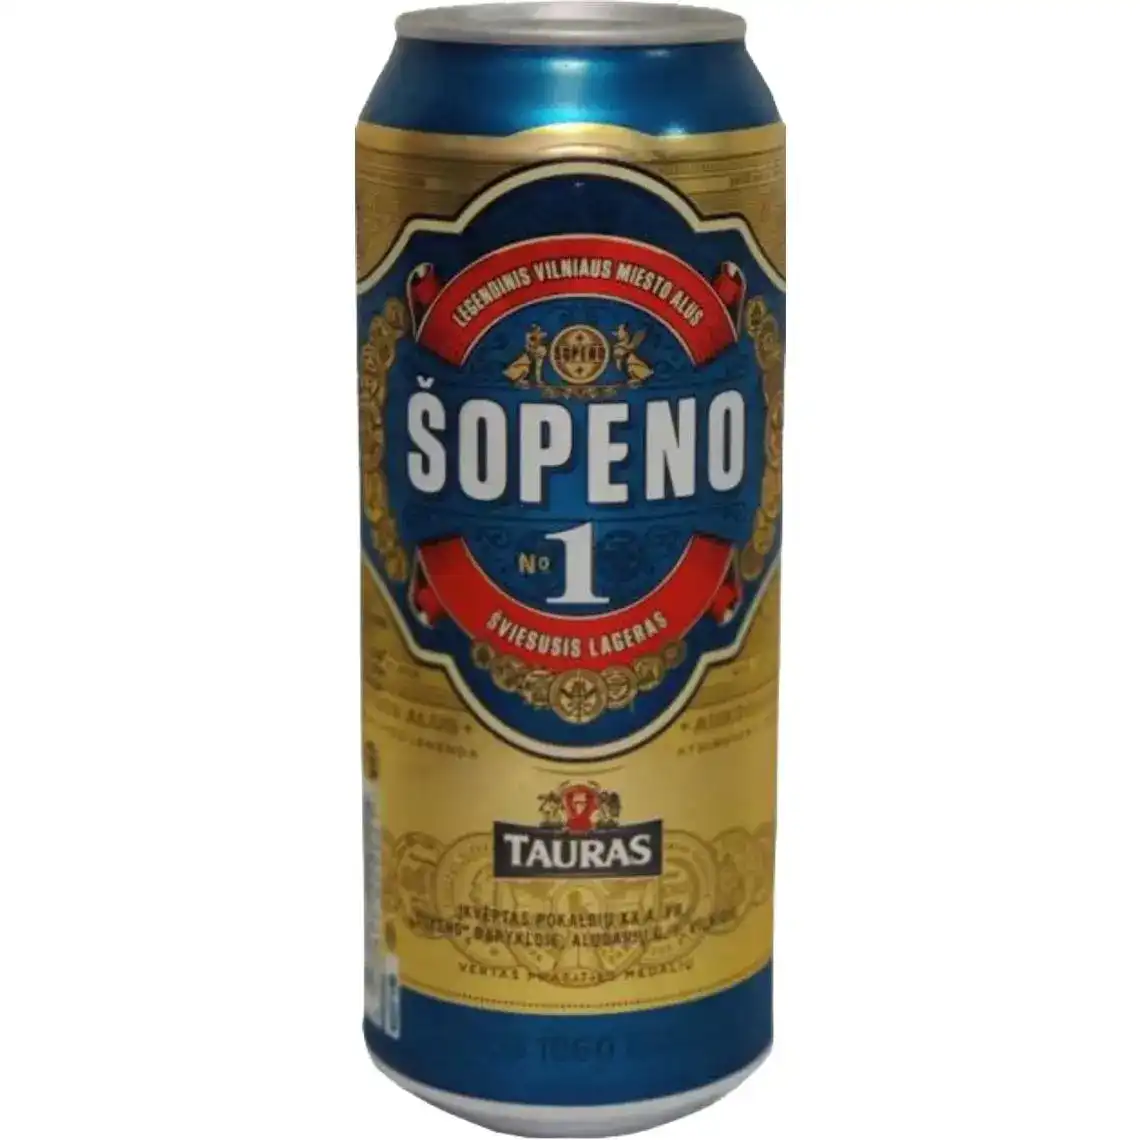 Пиво Tauras Sopeno 1 світле фільтроване 5% 0.5 л